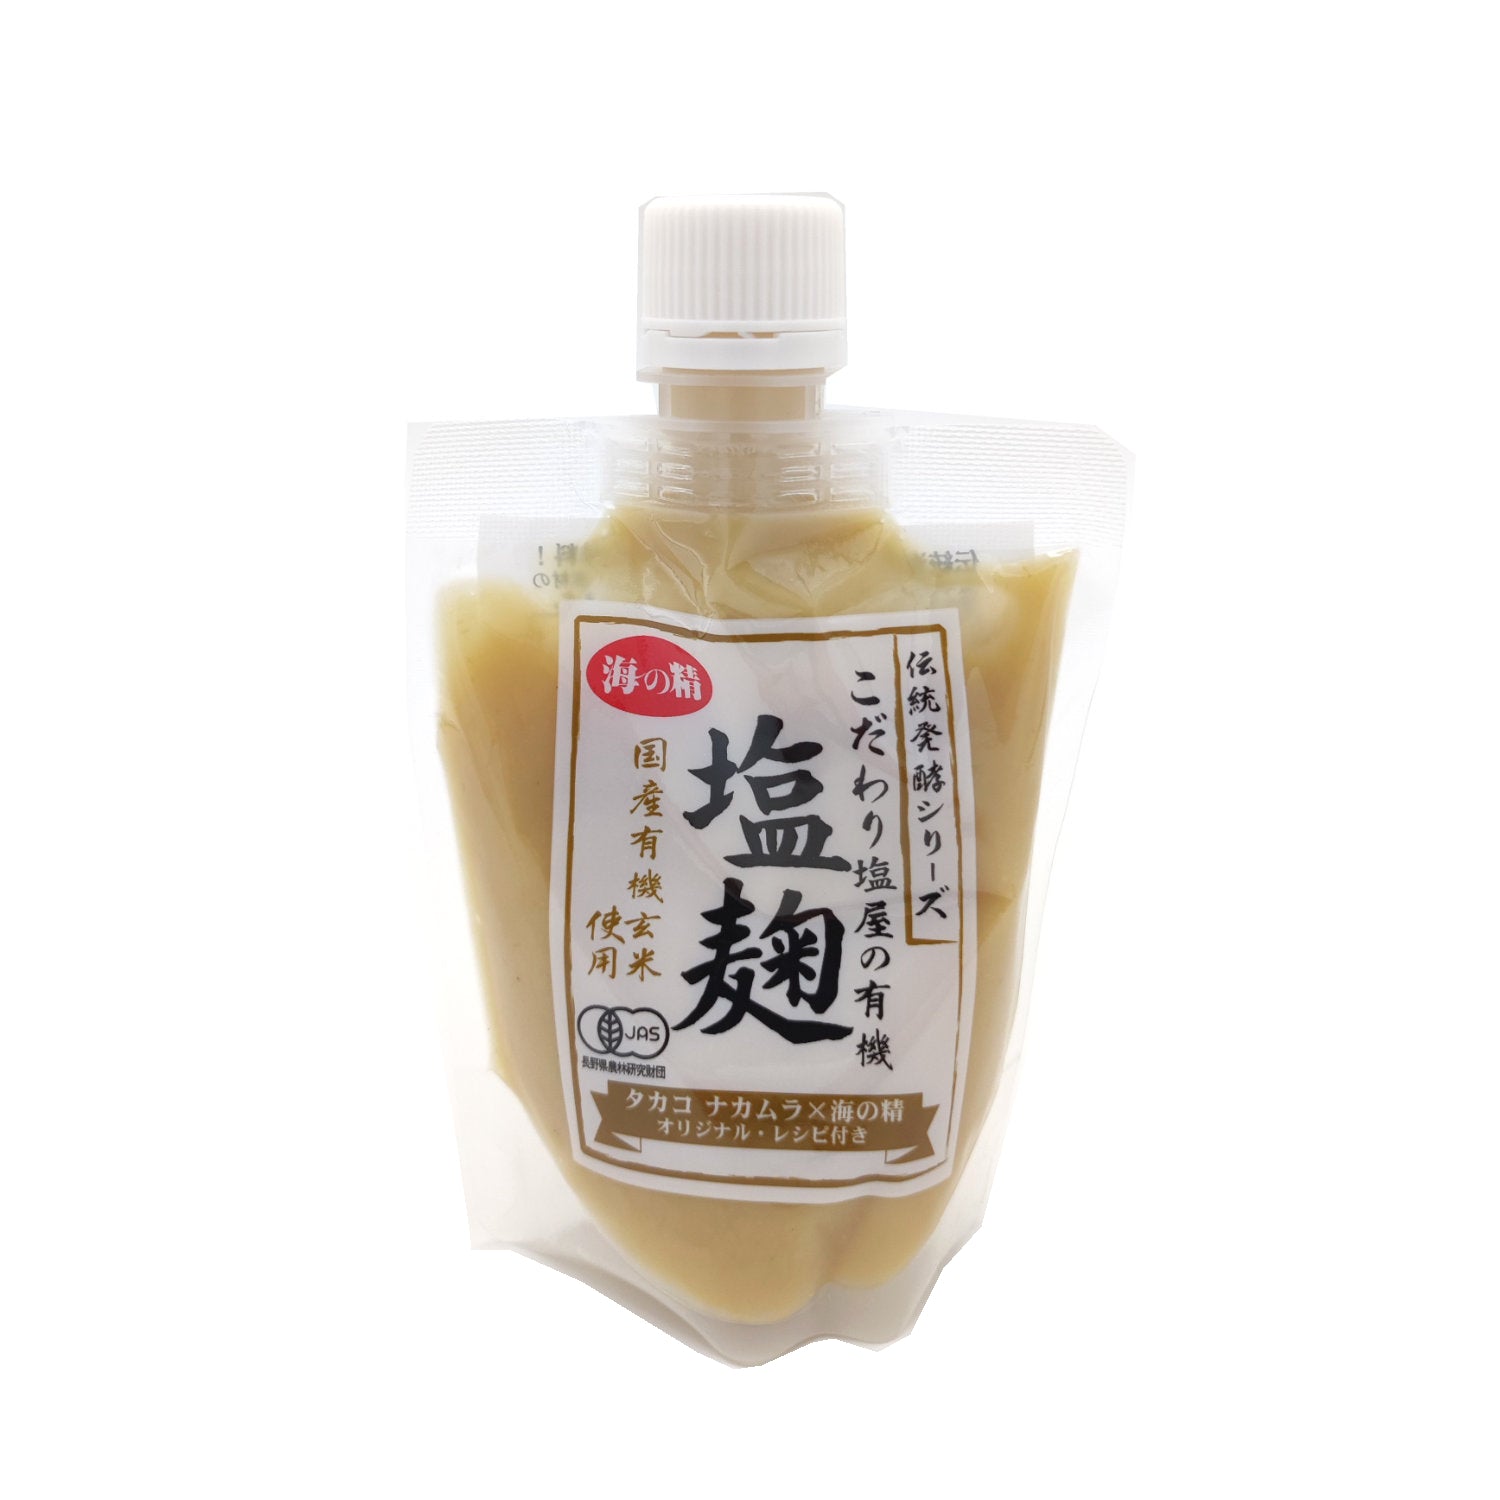 Uminosai Premium Shio Koji 170 g